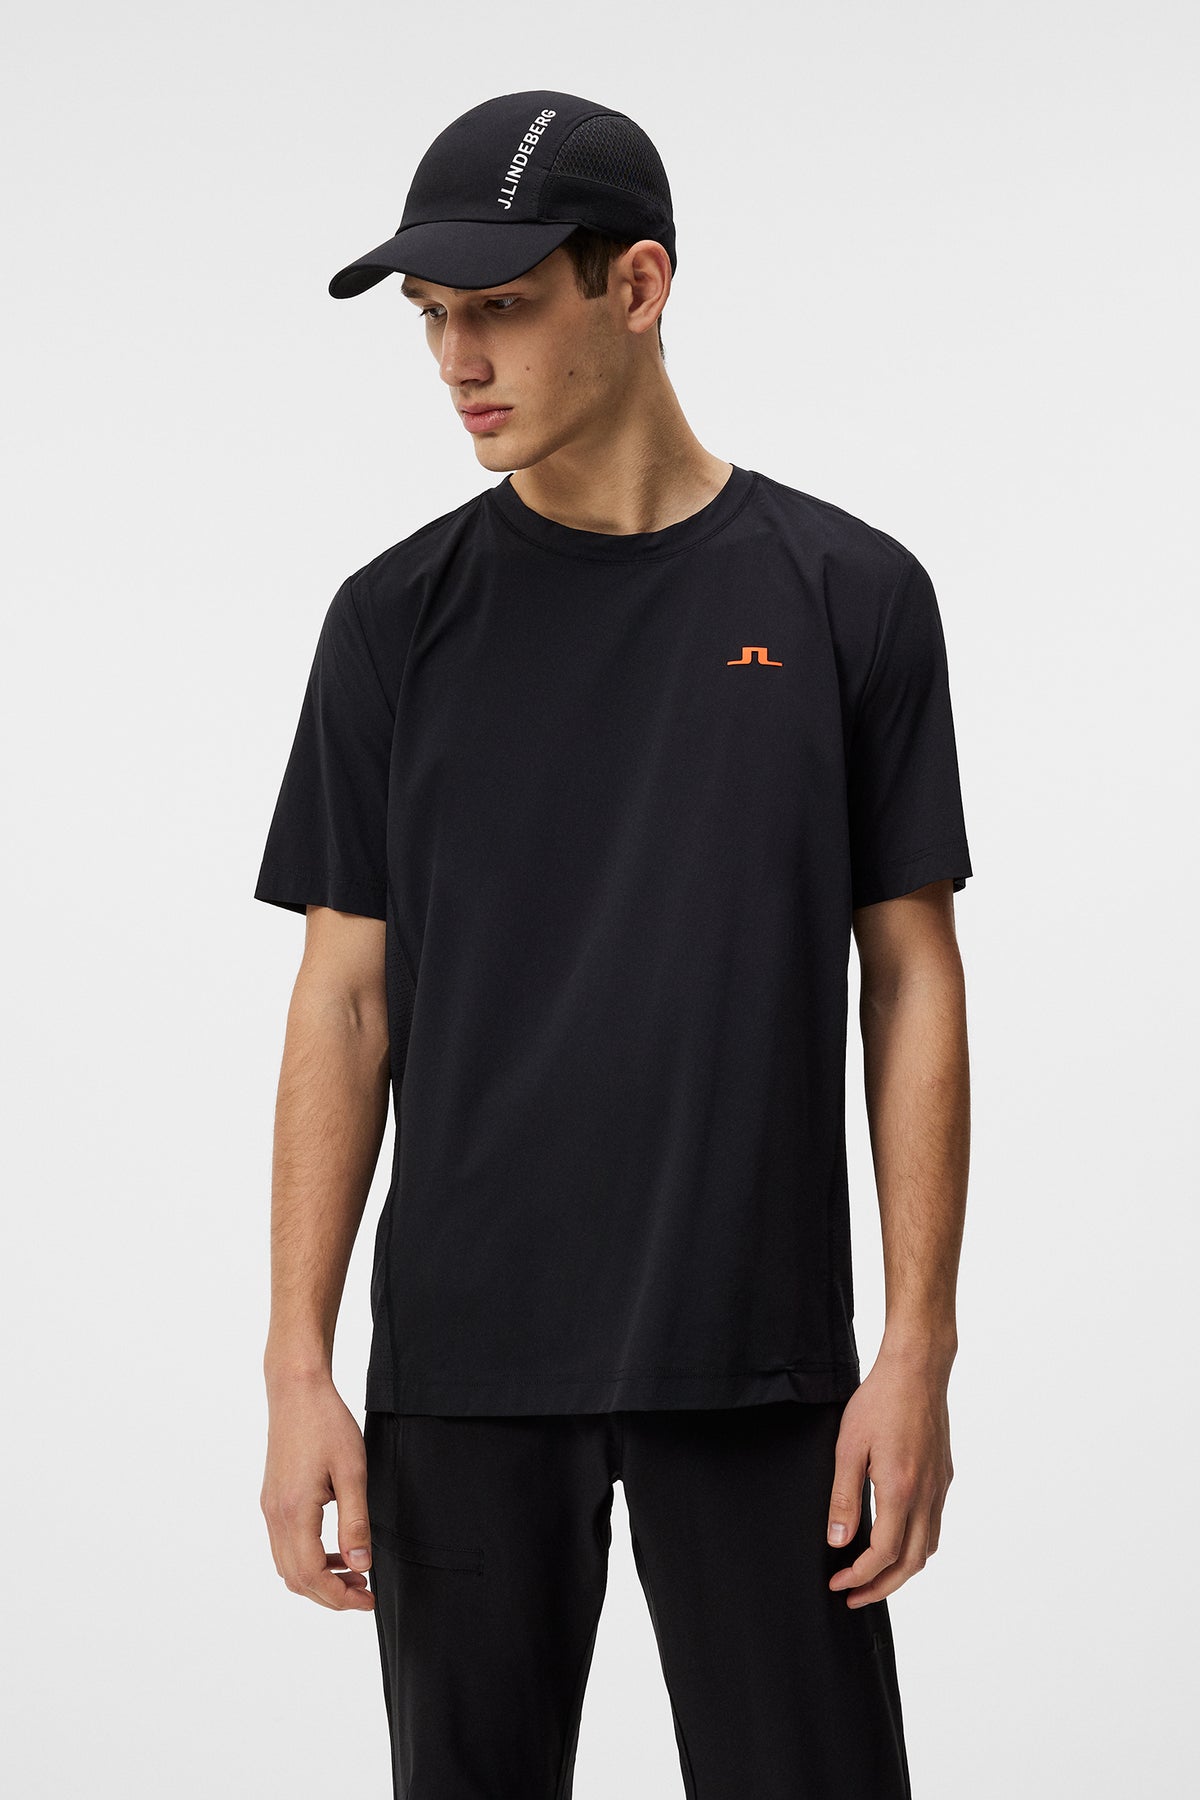 Tomas Pro Pack T-Shirt / Black